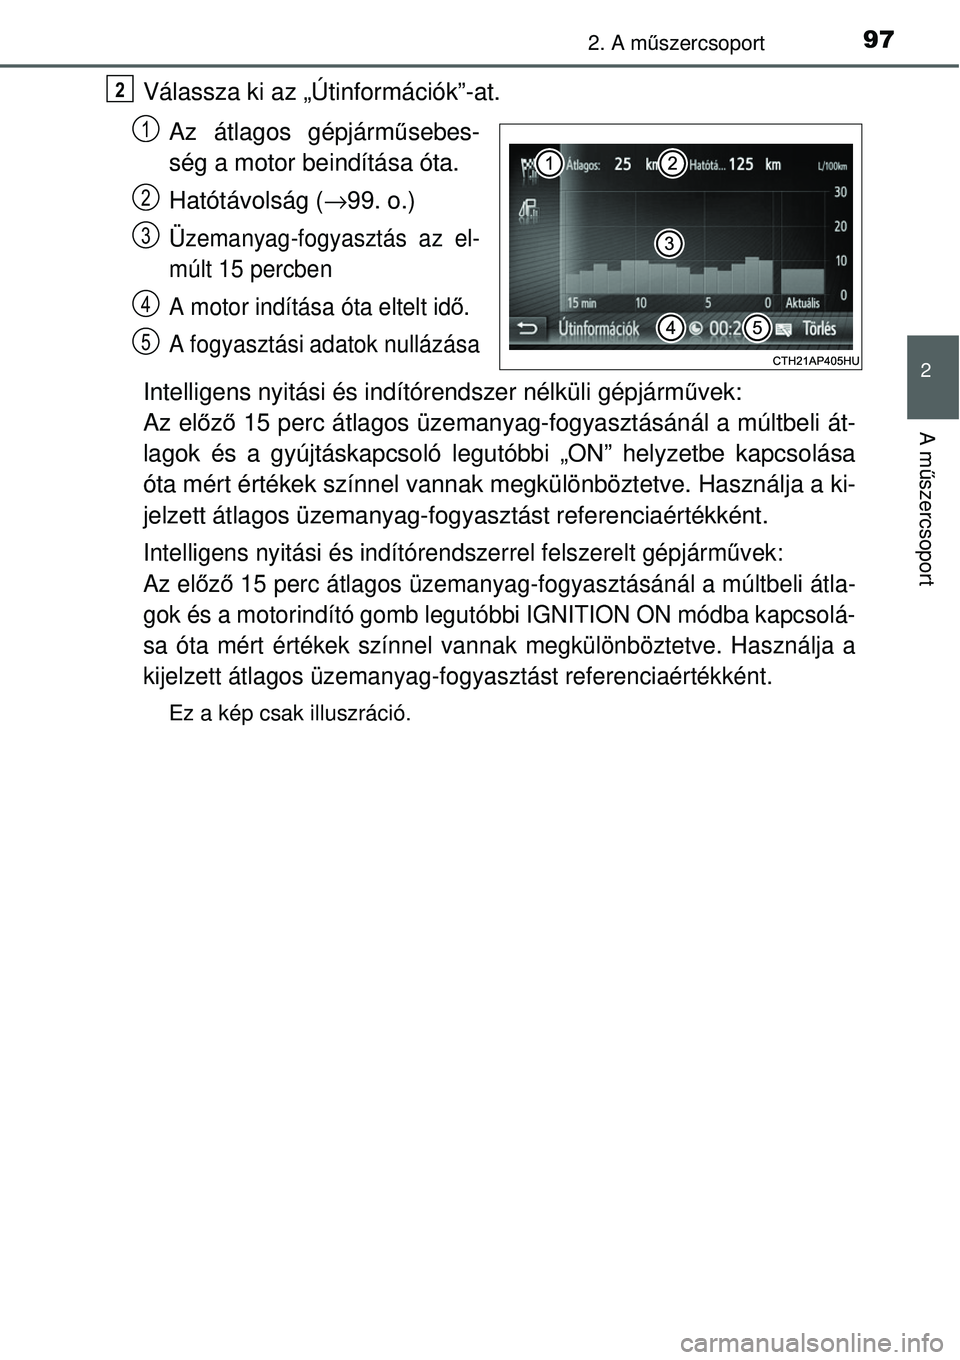 TOYOTA YARIS 2015  Kezelési útmutató (in Hungarian) 972. A műszercsoport
2
A műszercsoport
Válassza ki az „Útinformációk”-at.
Az átlagos gépjárműsebes-
ség a motor beindítása óta.
Hatótávolság (→99. o.)
Üzemanyag-fogyasztás az 